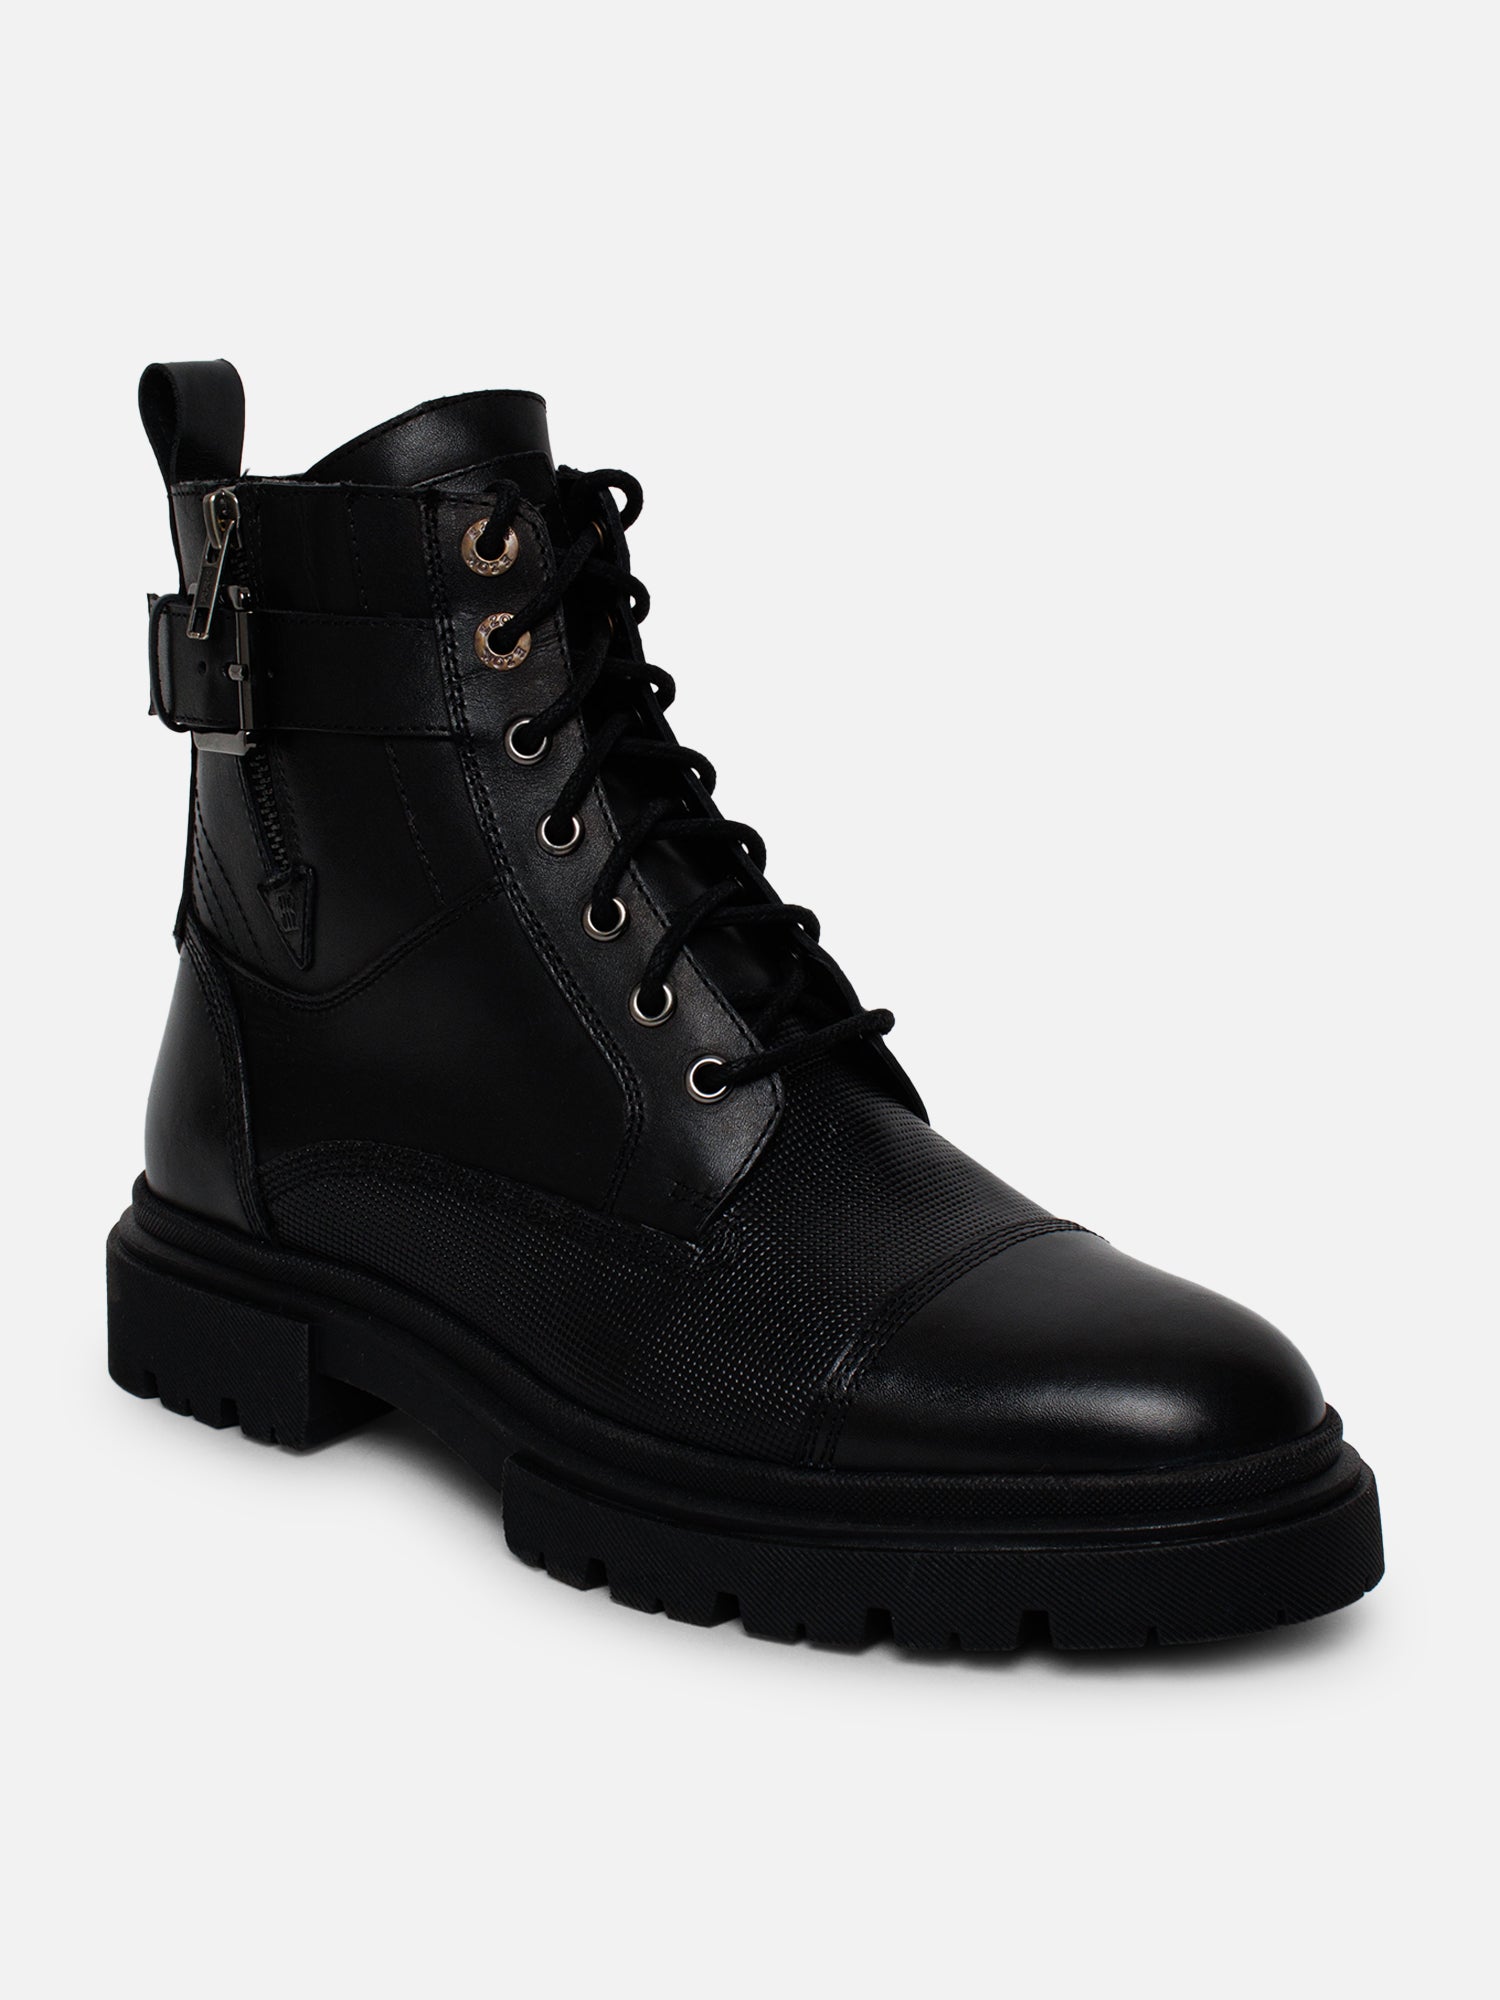 Ezok Casual Boot For Men